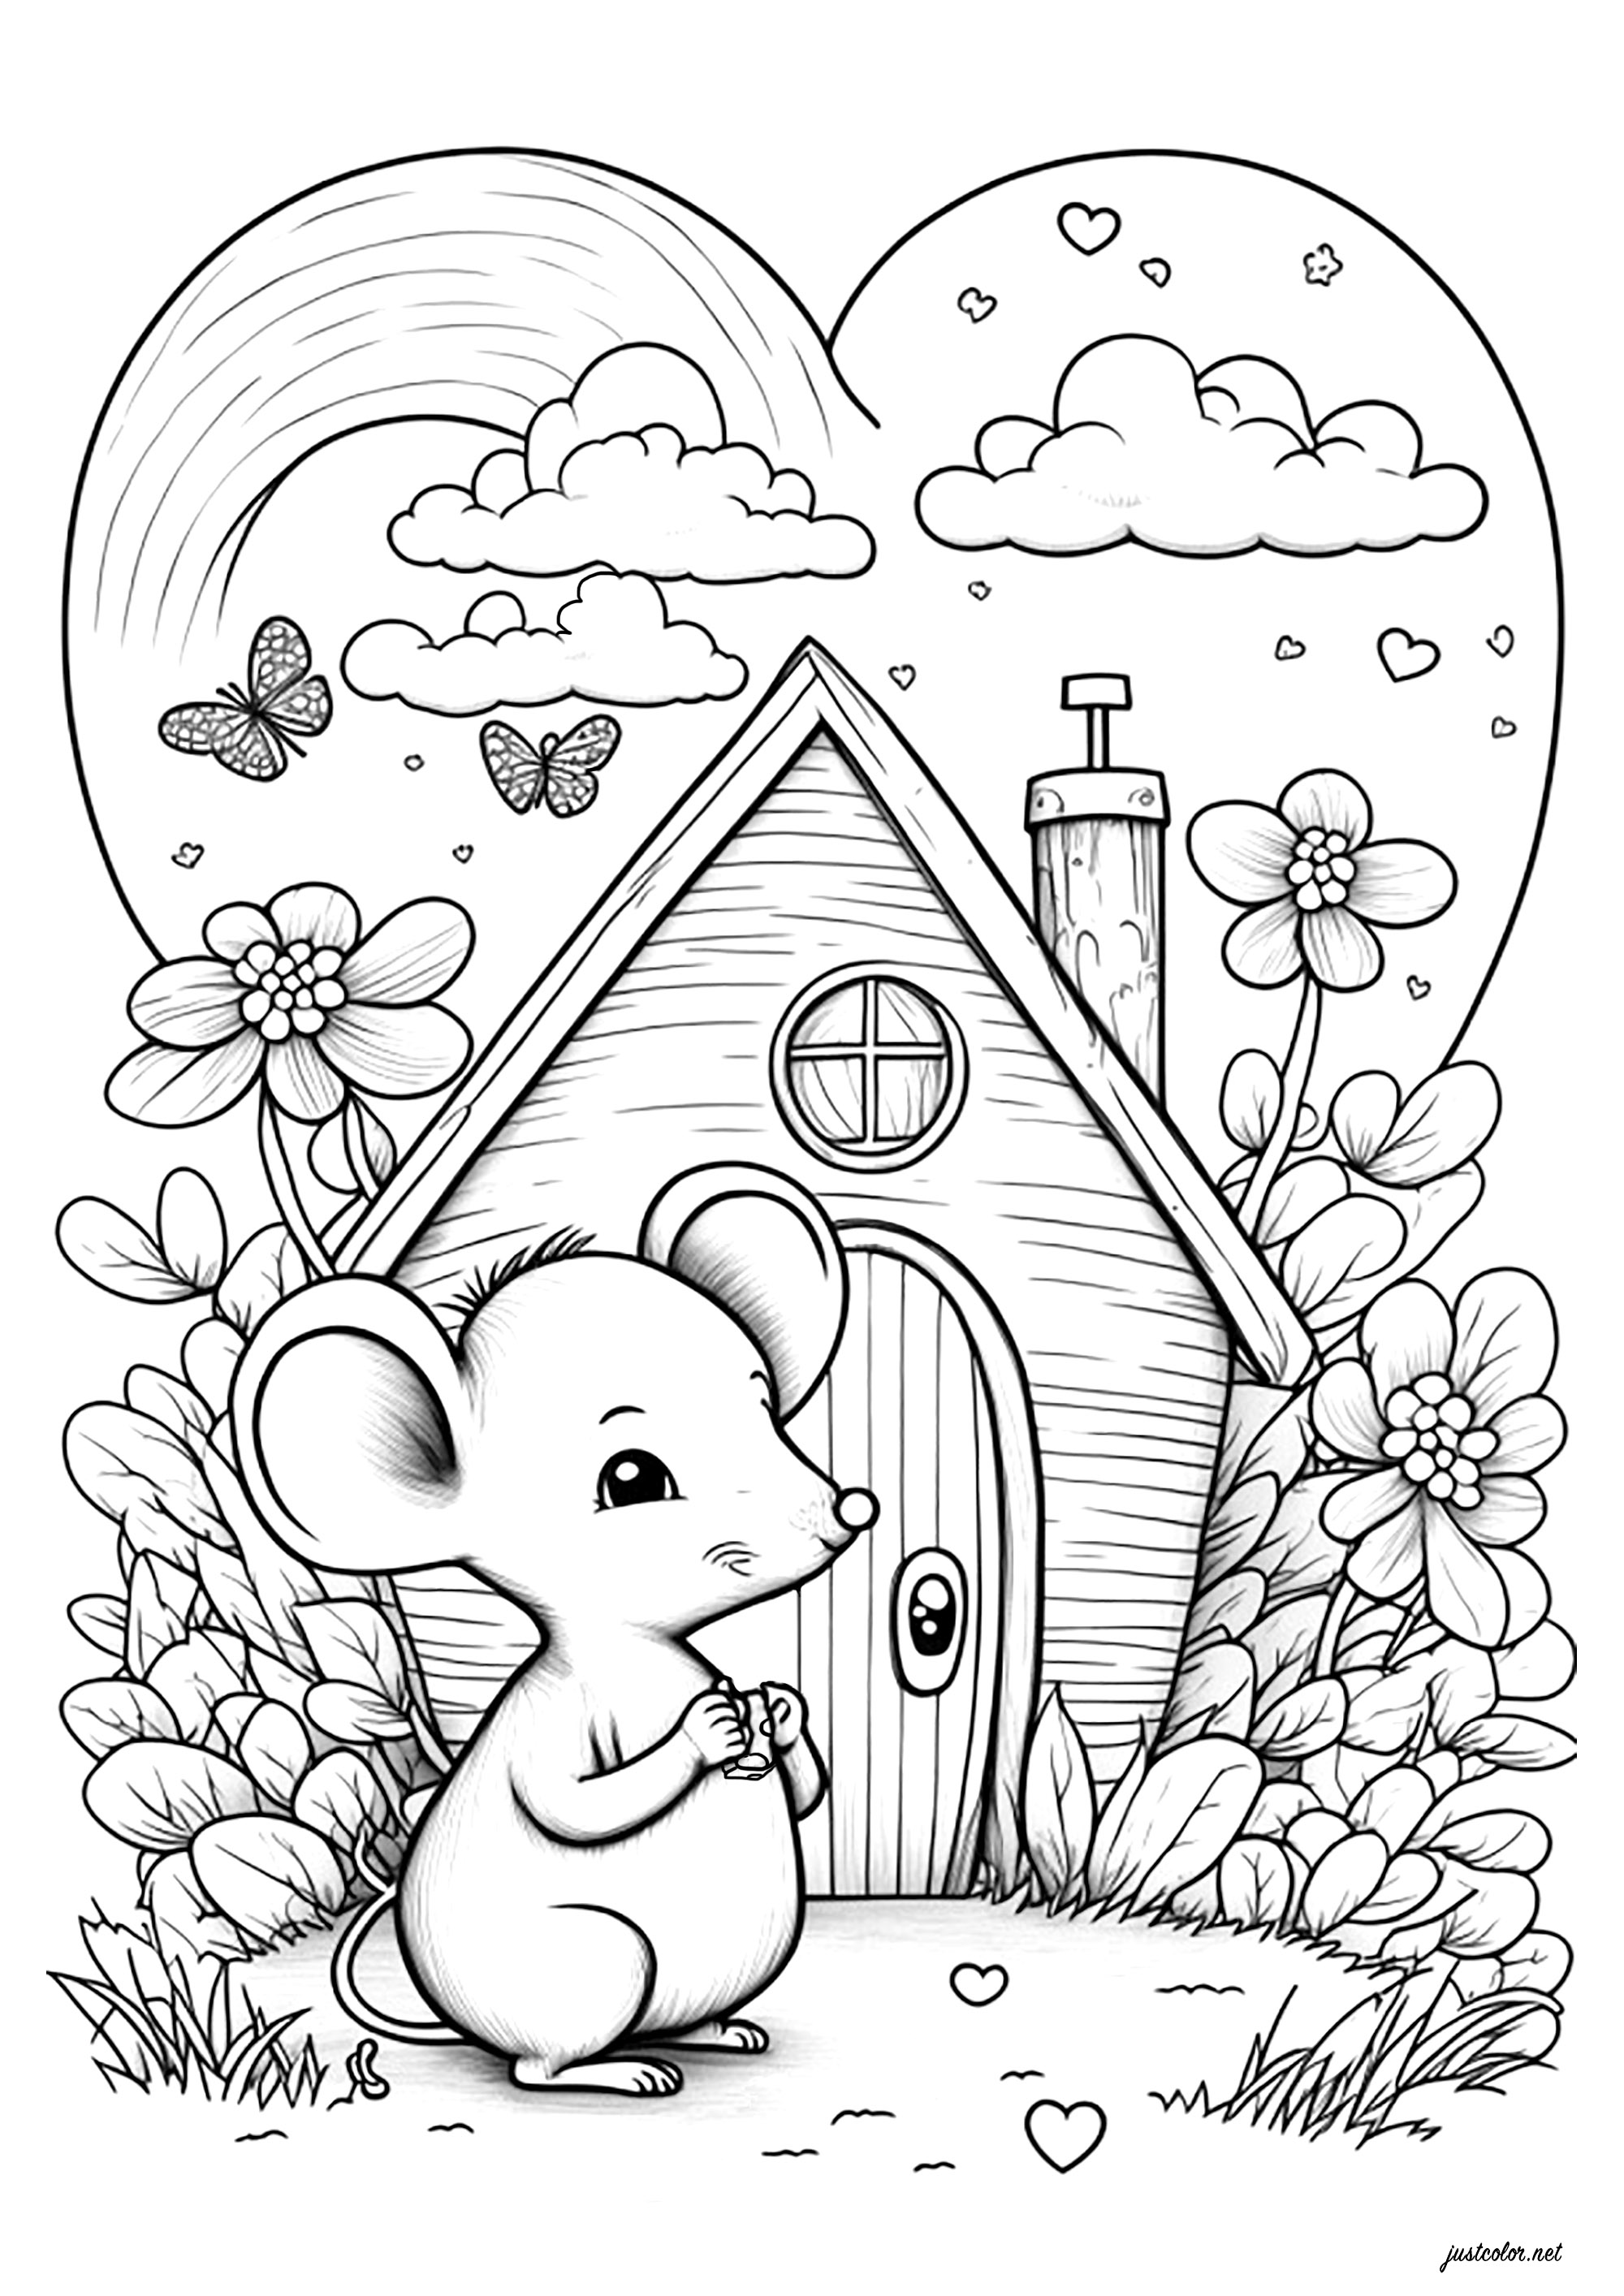 Ratón comiendo un trozo de queso delante de su bonita casa. Este bonito ratón parece estar disfrutando de un momento de paz y tranquilidad delante de su casita. Colorea cada detalle de la casa, el florido jardín, el cielo lleno de corazones y mariposas, y el simpático ratón... ¡tu creatividad no tiene límites!